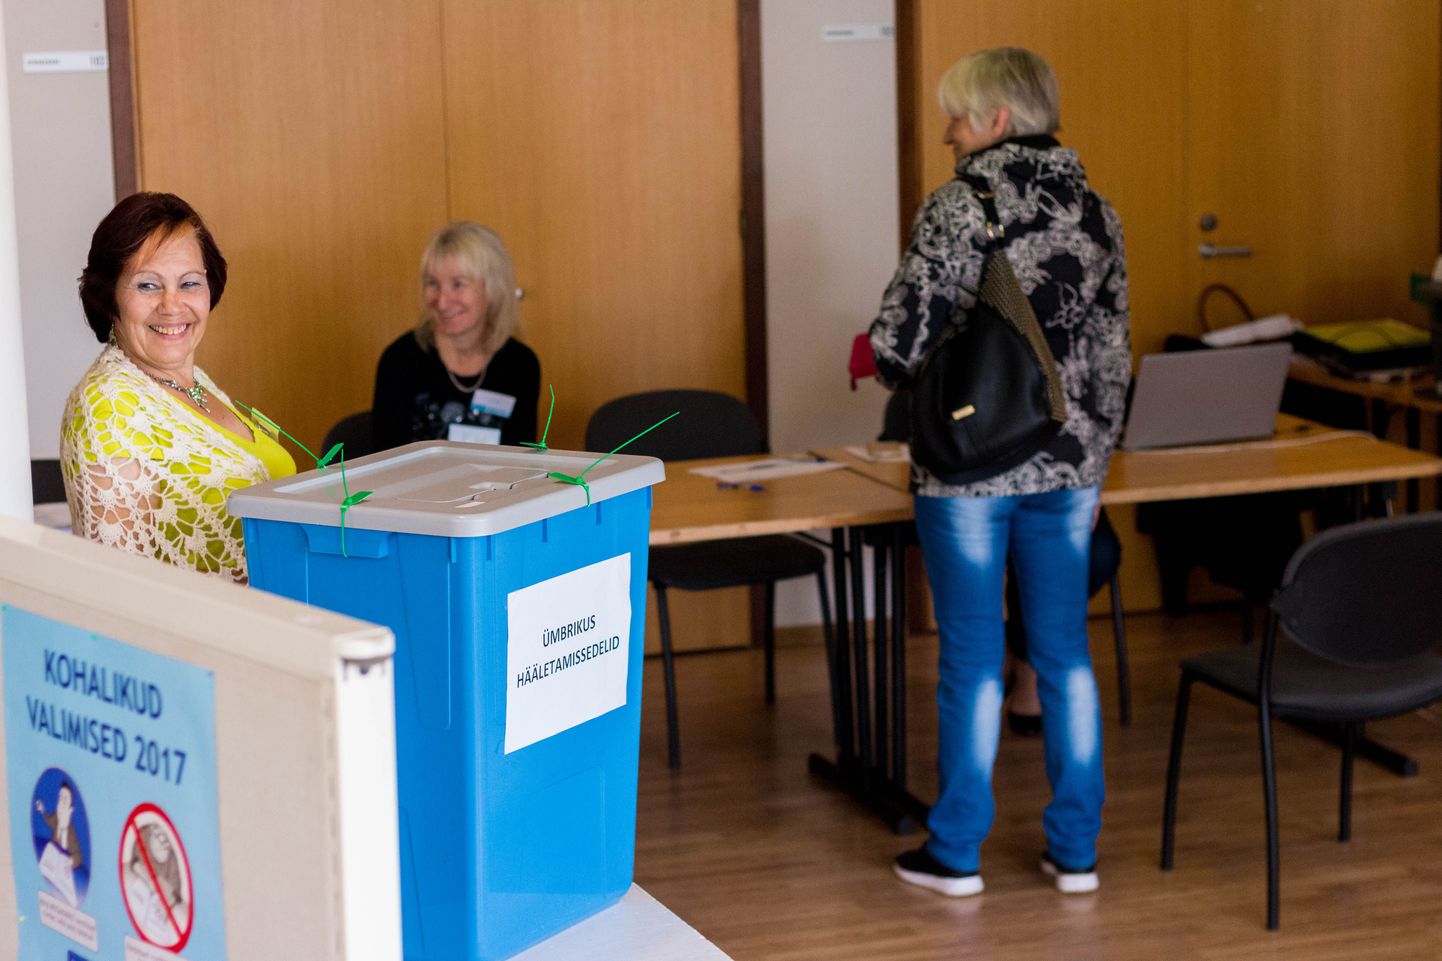 Kohalikud valimised 2017. Eelhääletamine valimisjaoskonnas